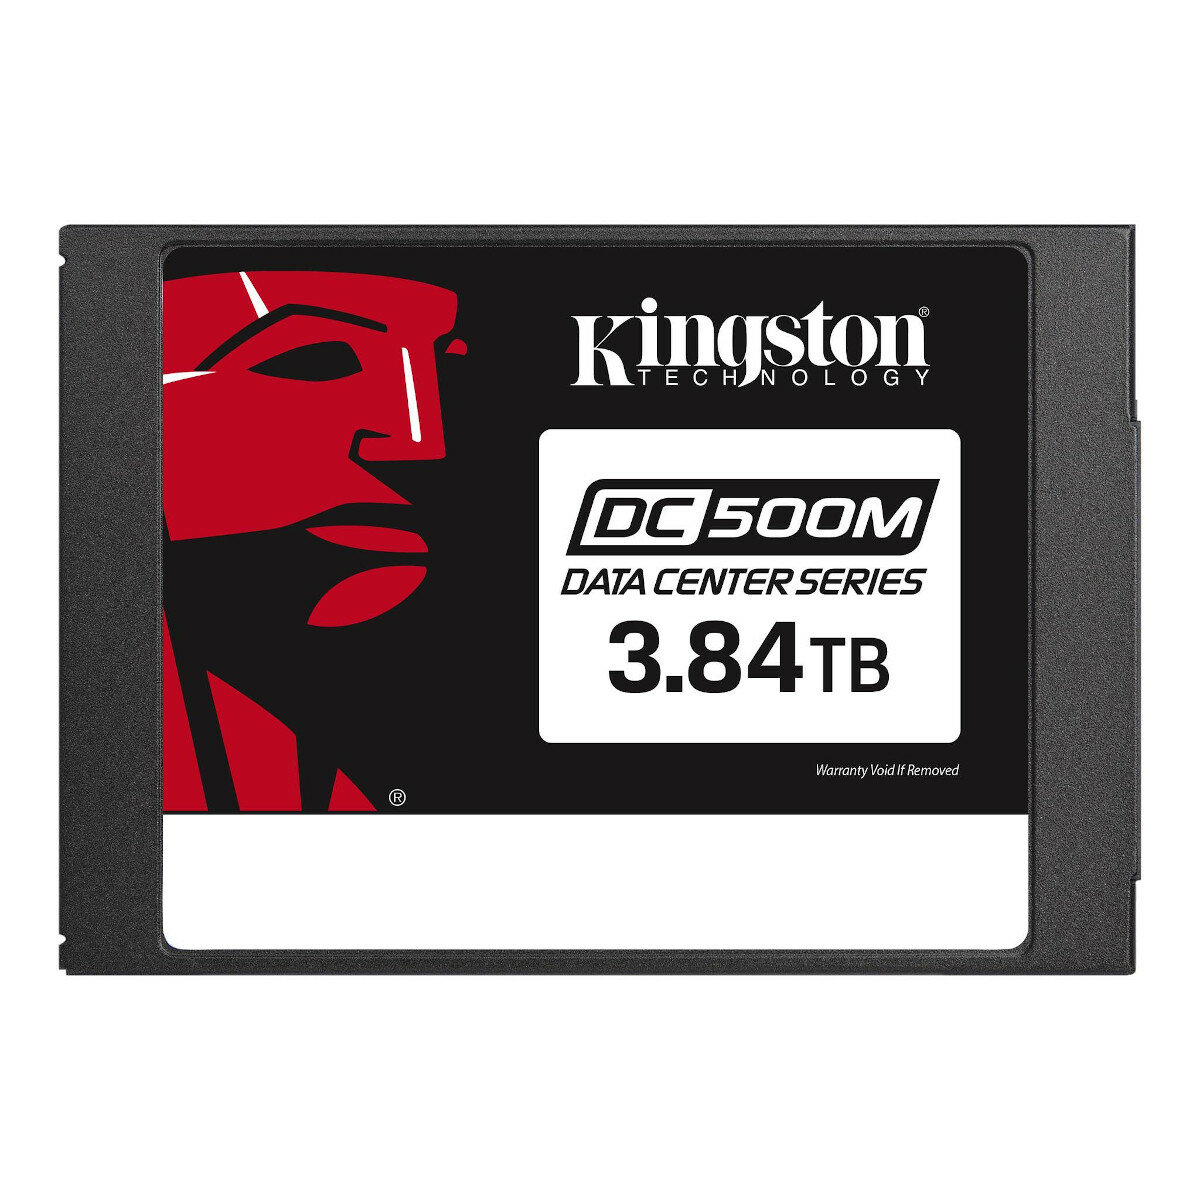 Dysk SSD Kingston DC500M zdjęcie dysku od przodu